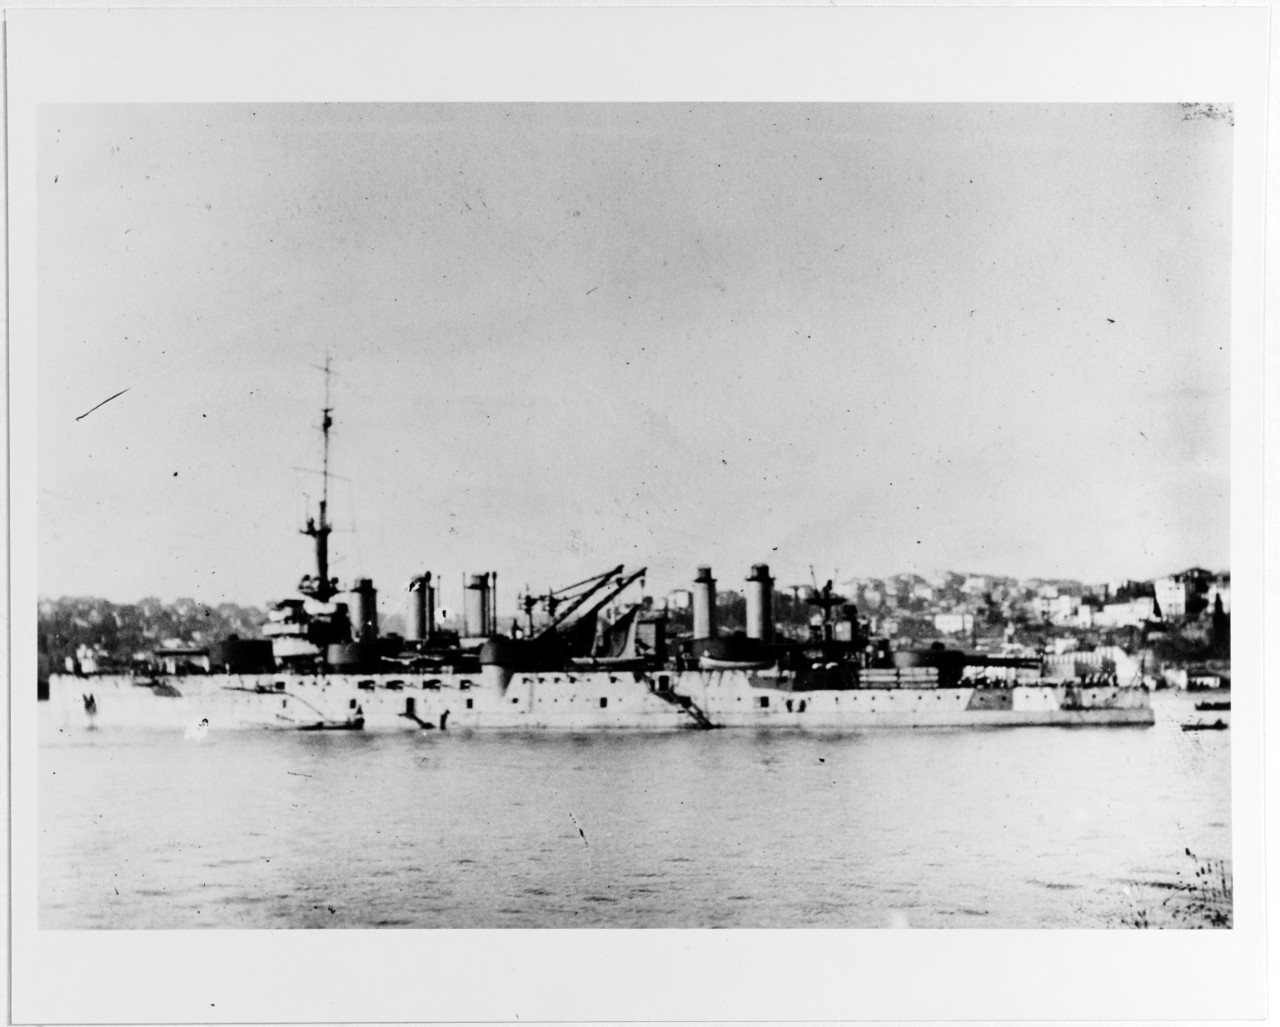 VERGNIAUD (French battleship, 1910-1921)